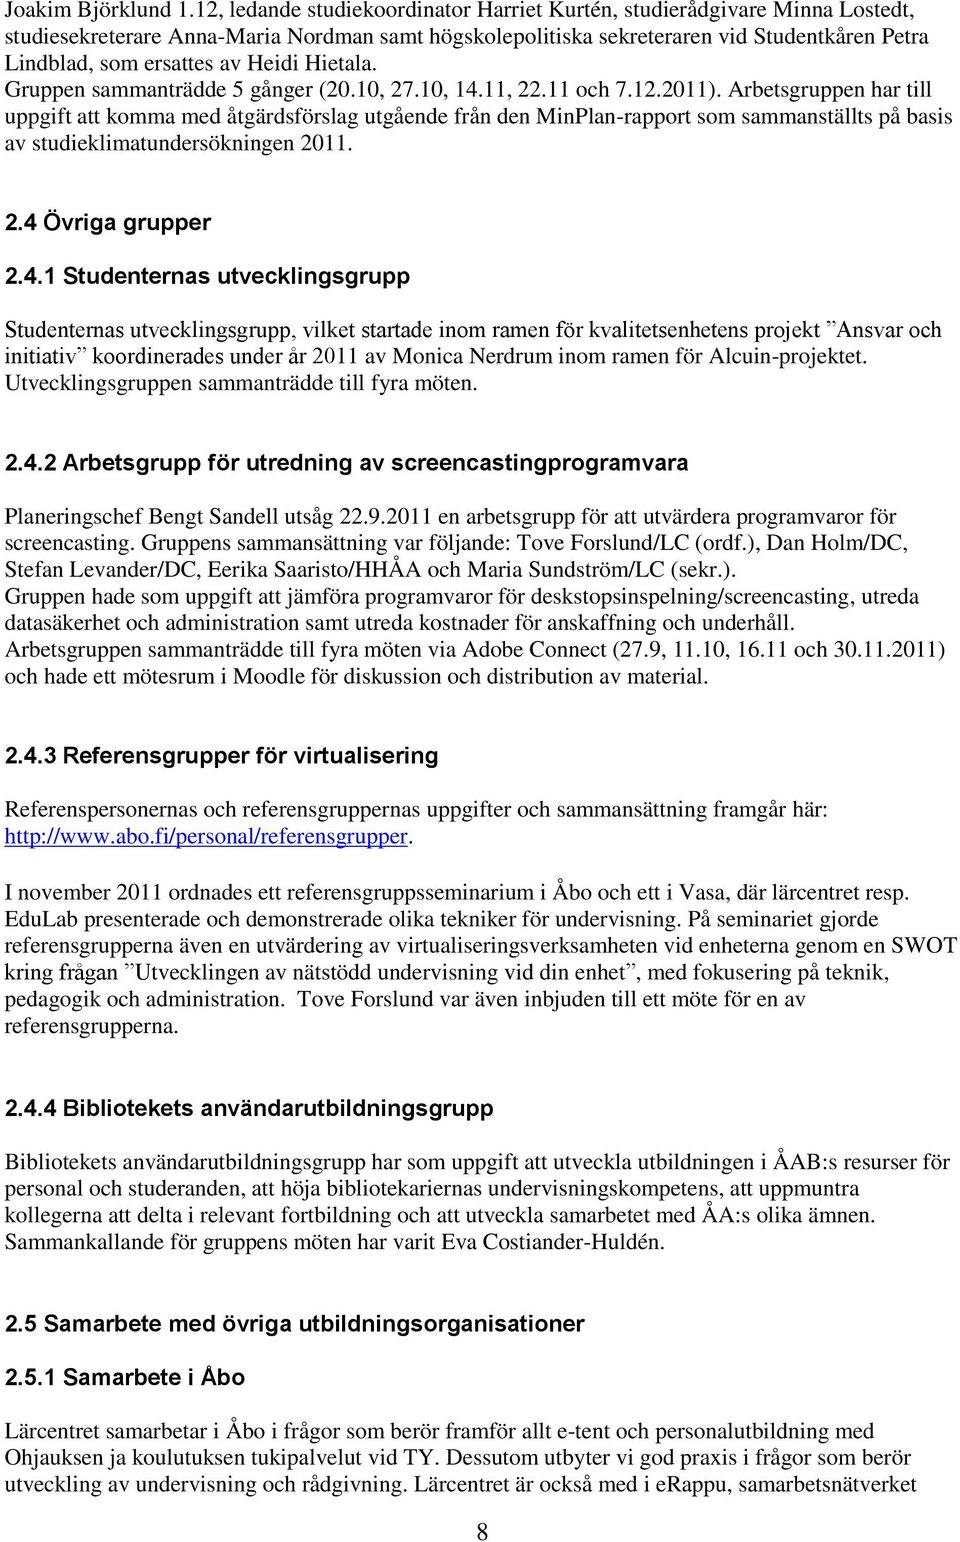 Heidi Hietala. Gruppen sammanträdde 5 gånger (20.10, 27.10, 14.11, 22.11 och 7.12.2011).